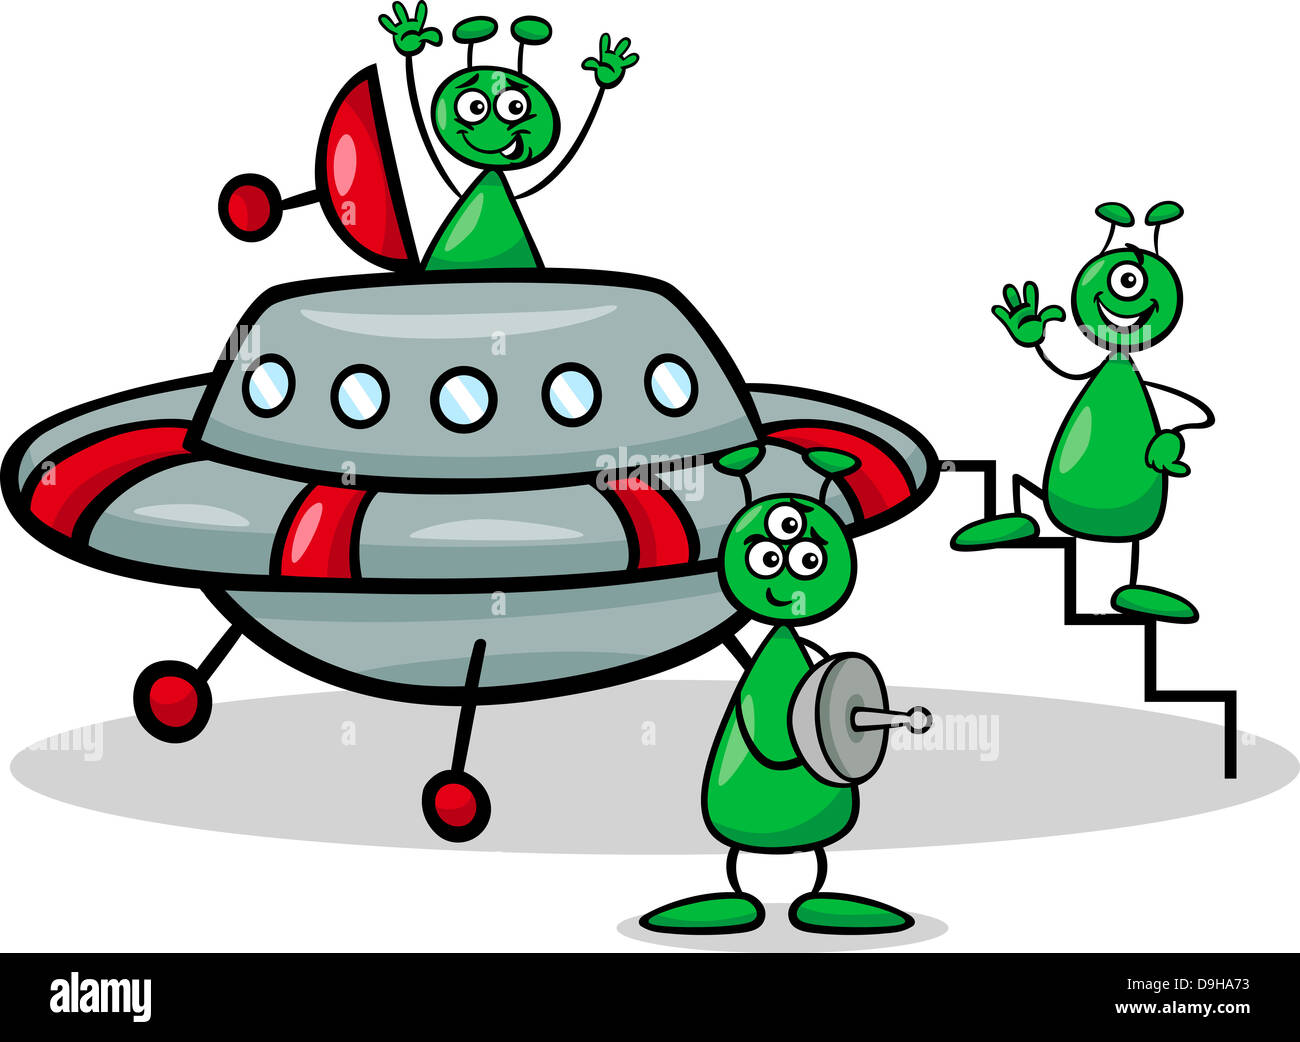 Cartoon-Illustration von drei lustige Aliens oder Marsmenschen Comic-Figuren mit Ufo oder Raumschiff Stockfoto